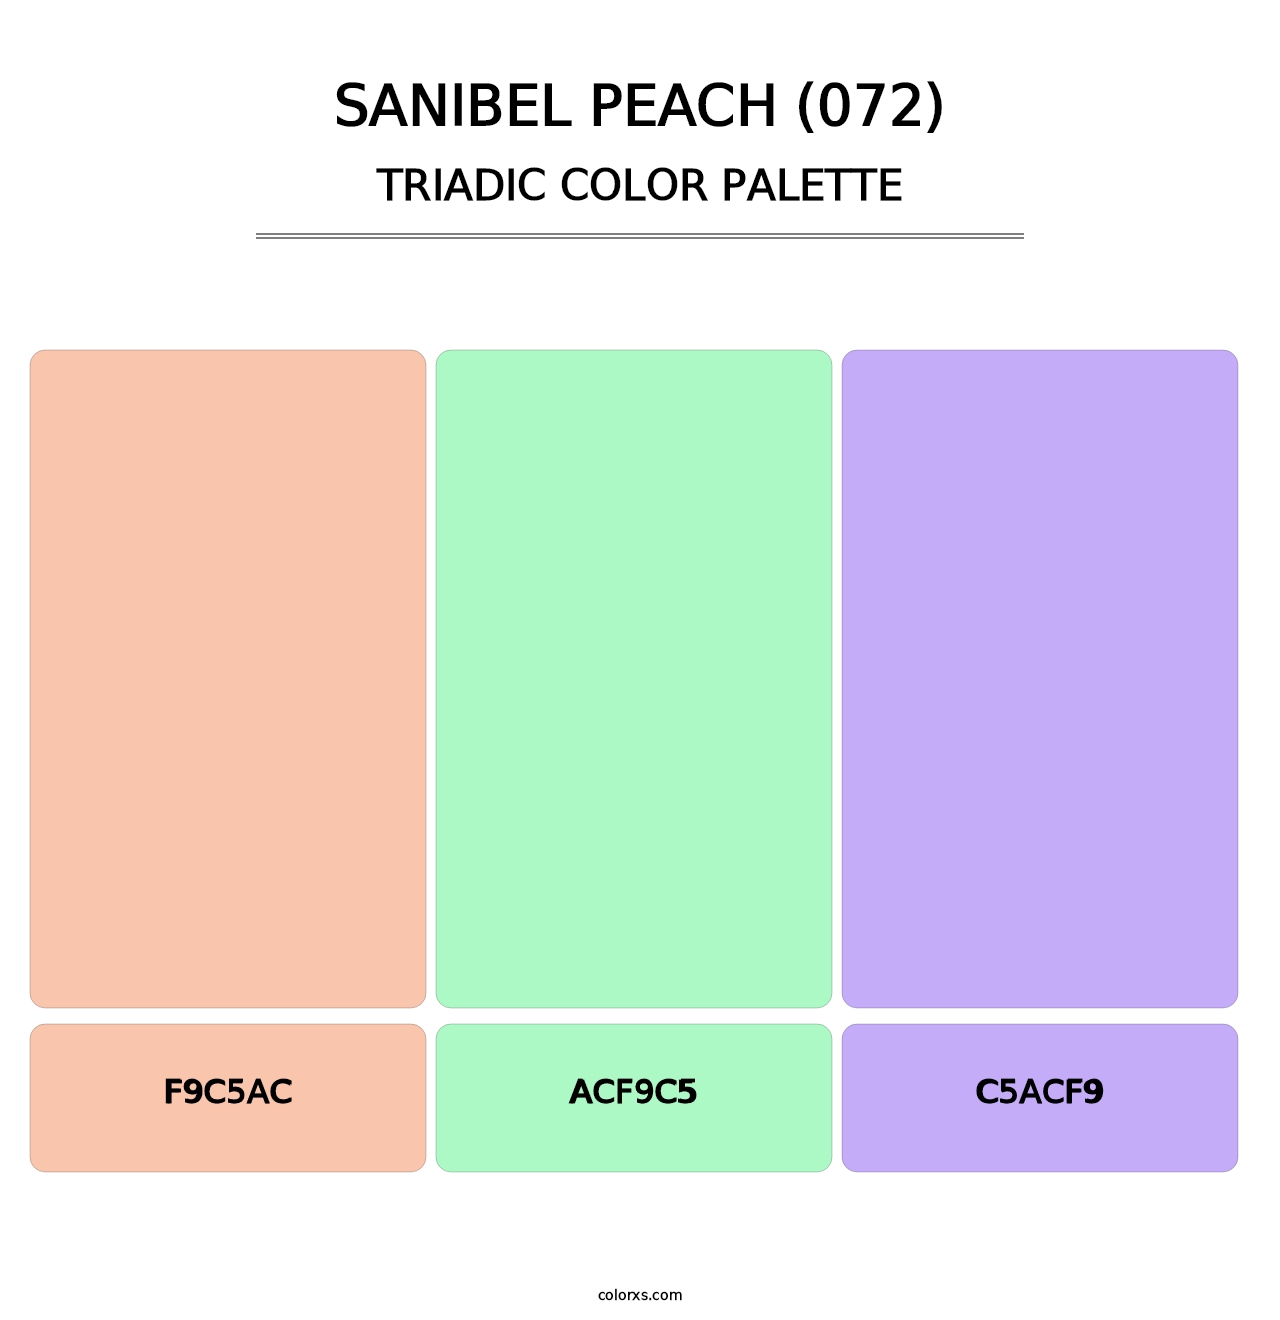 Sanibel Peach (072) - Triadic Color Palette